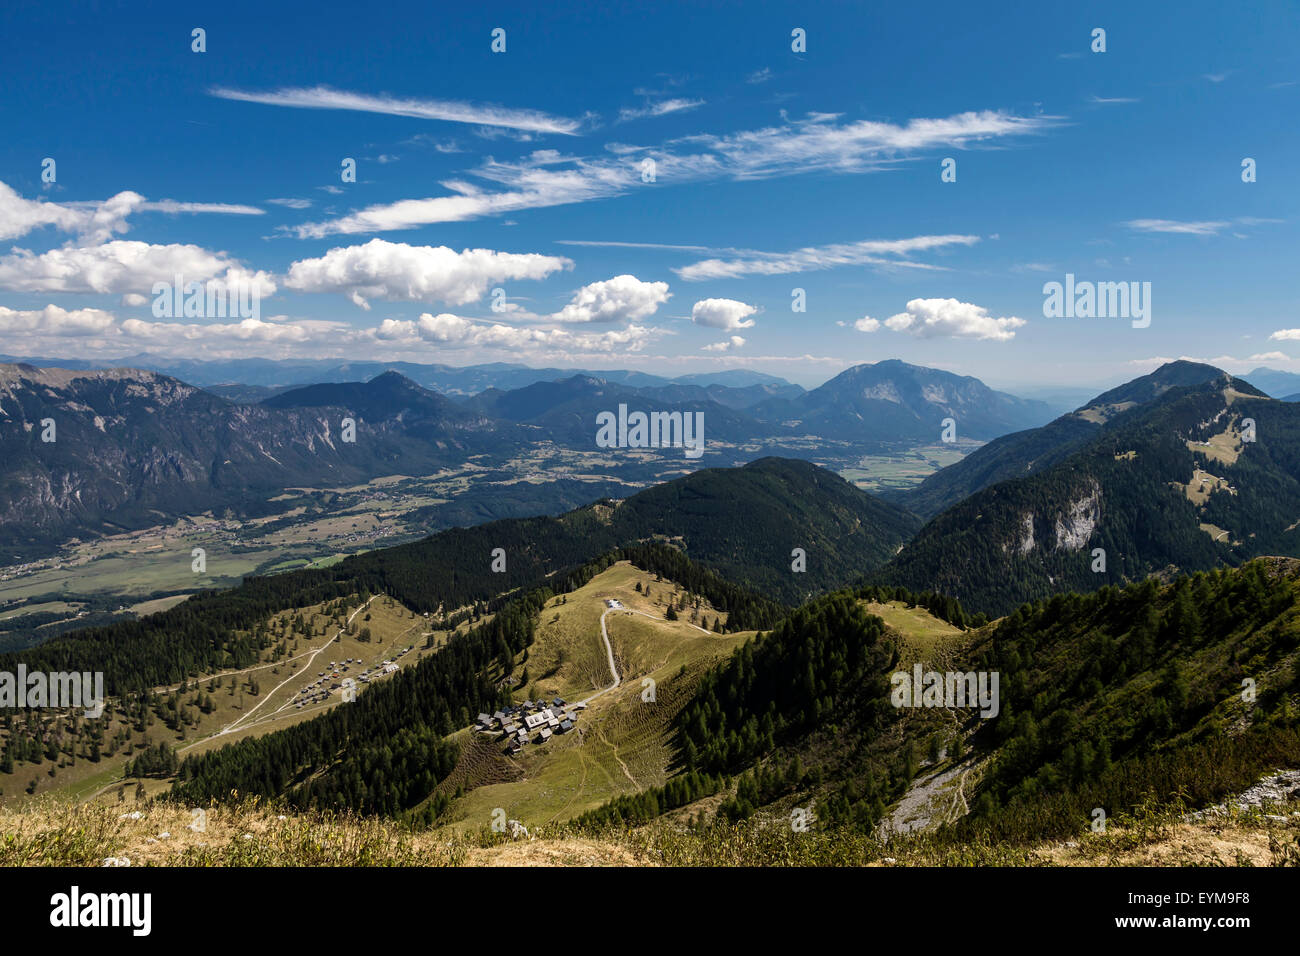 Blick vom Gipfel des Poludnig auf das Gailtal, Poludnig-Alm und Dellacher Alm, Kärnten, Österreich Stock Photo